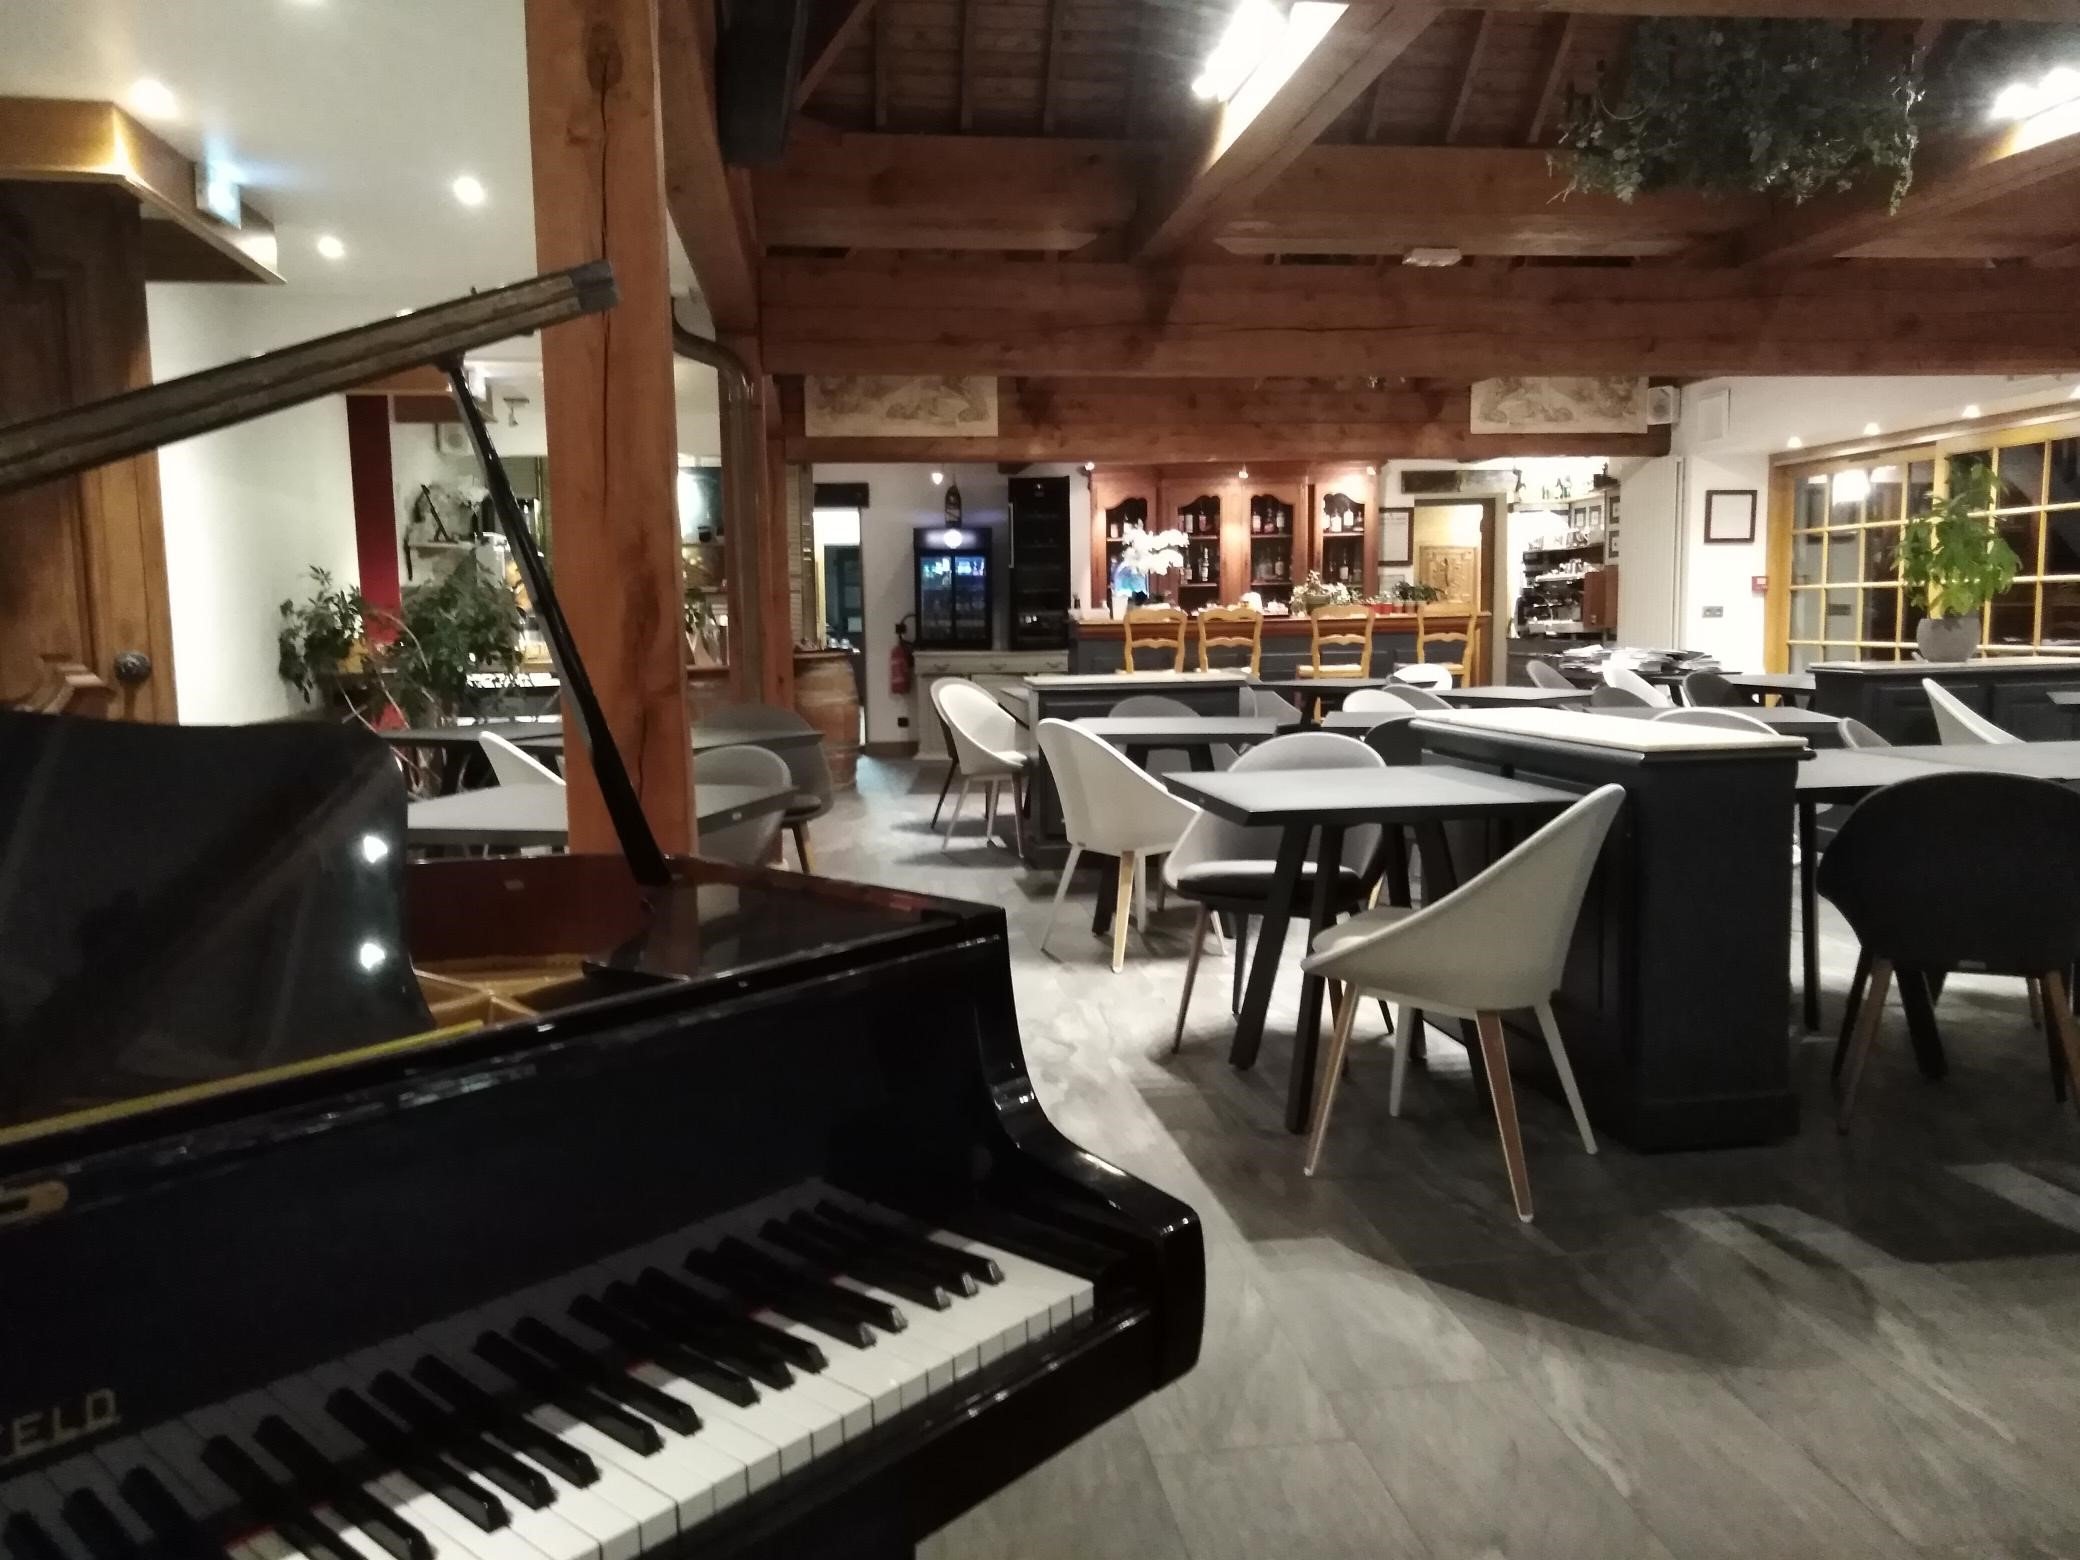 Salle de restauration dans notre hôtel spa restaurant pendant votre soirée étape en Normandie